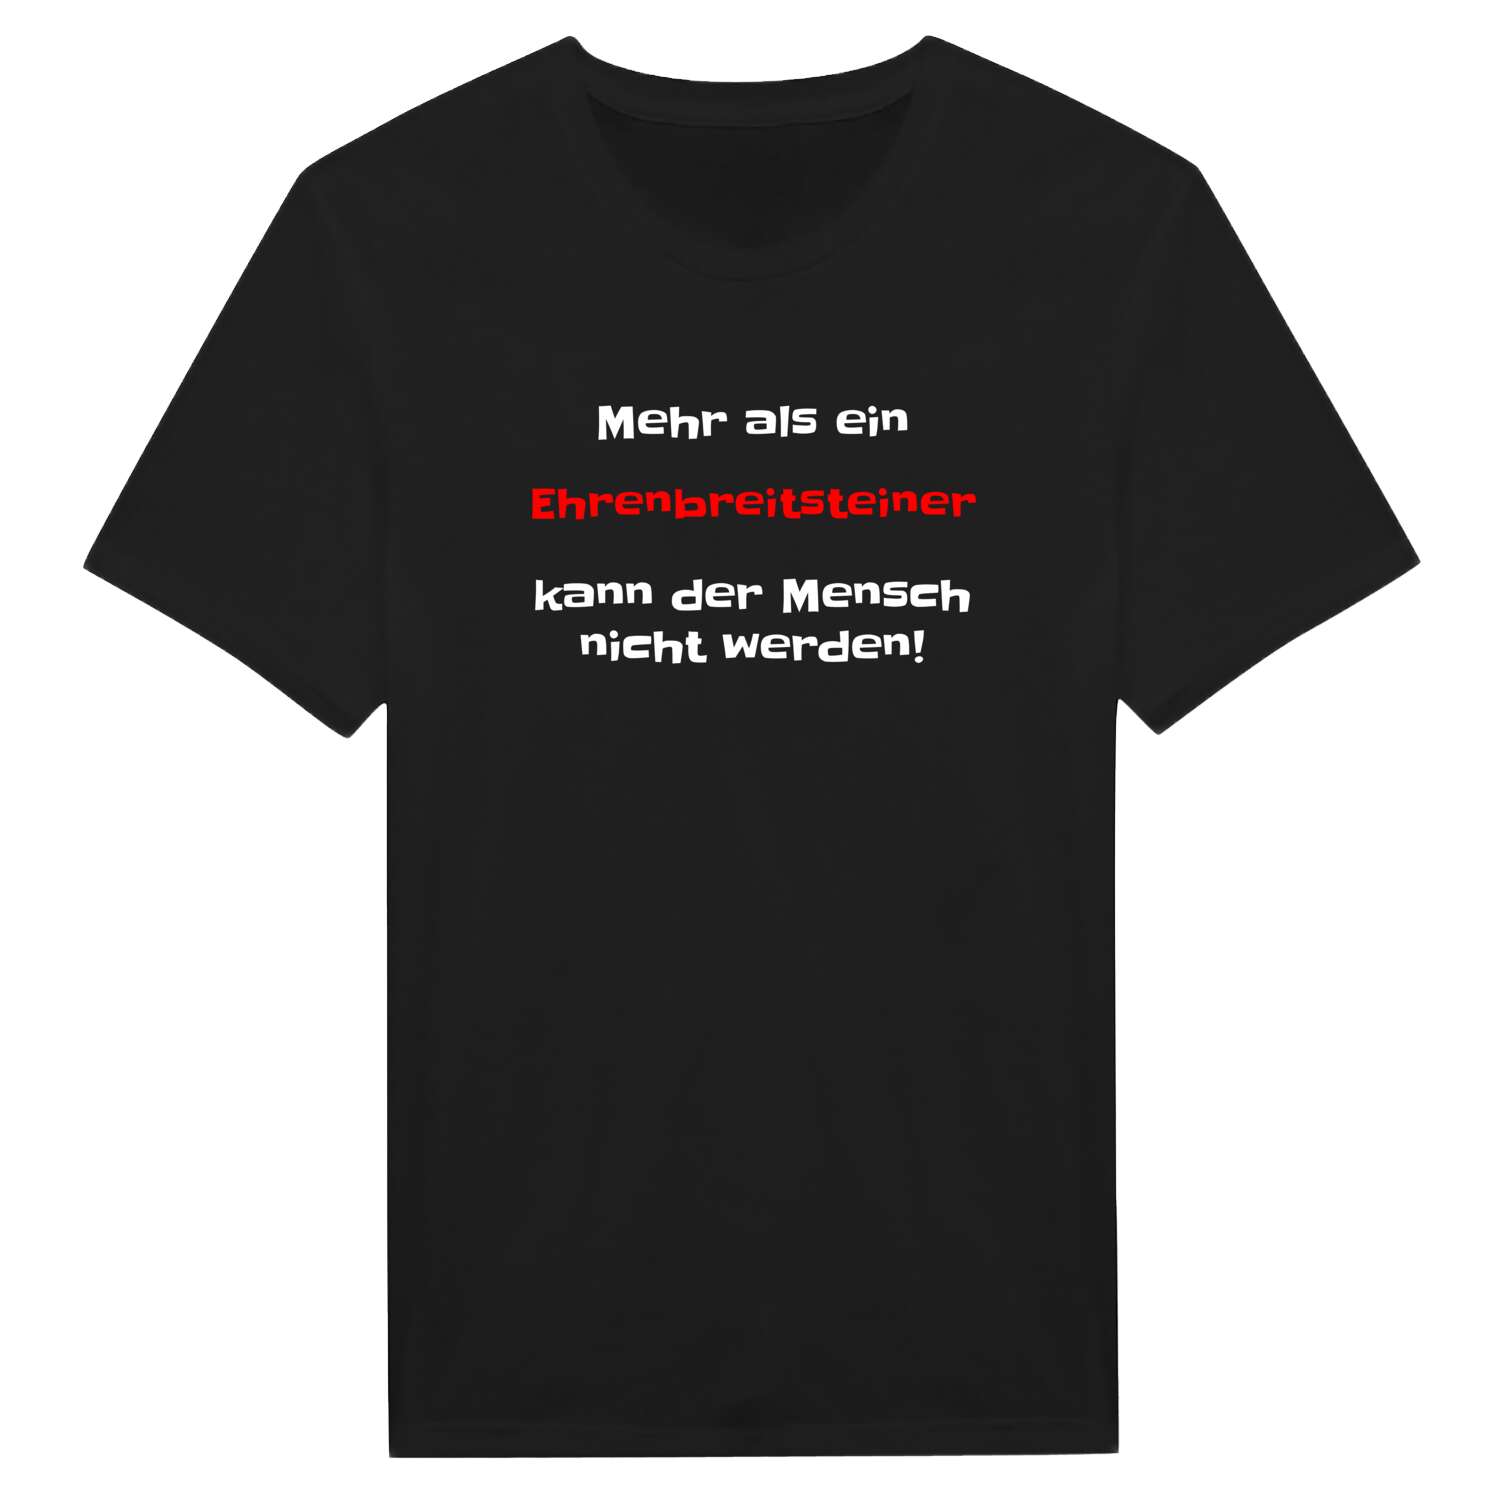 Ehrenbreitstein T-Shirt »Mehr als ein«